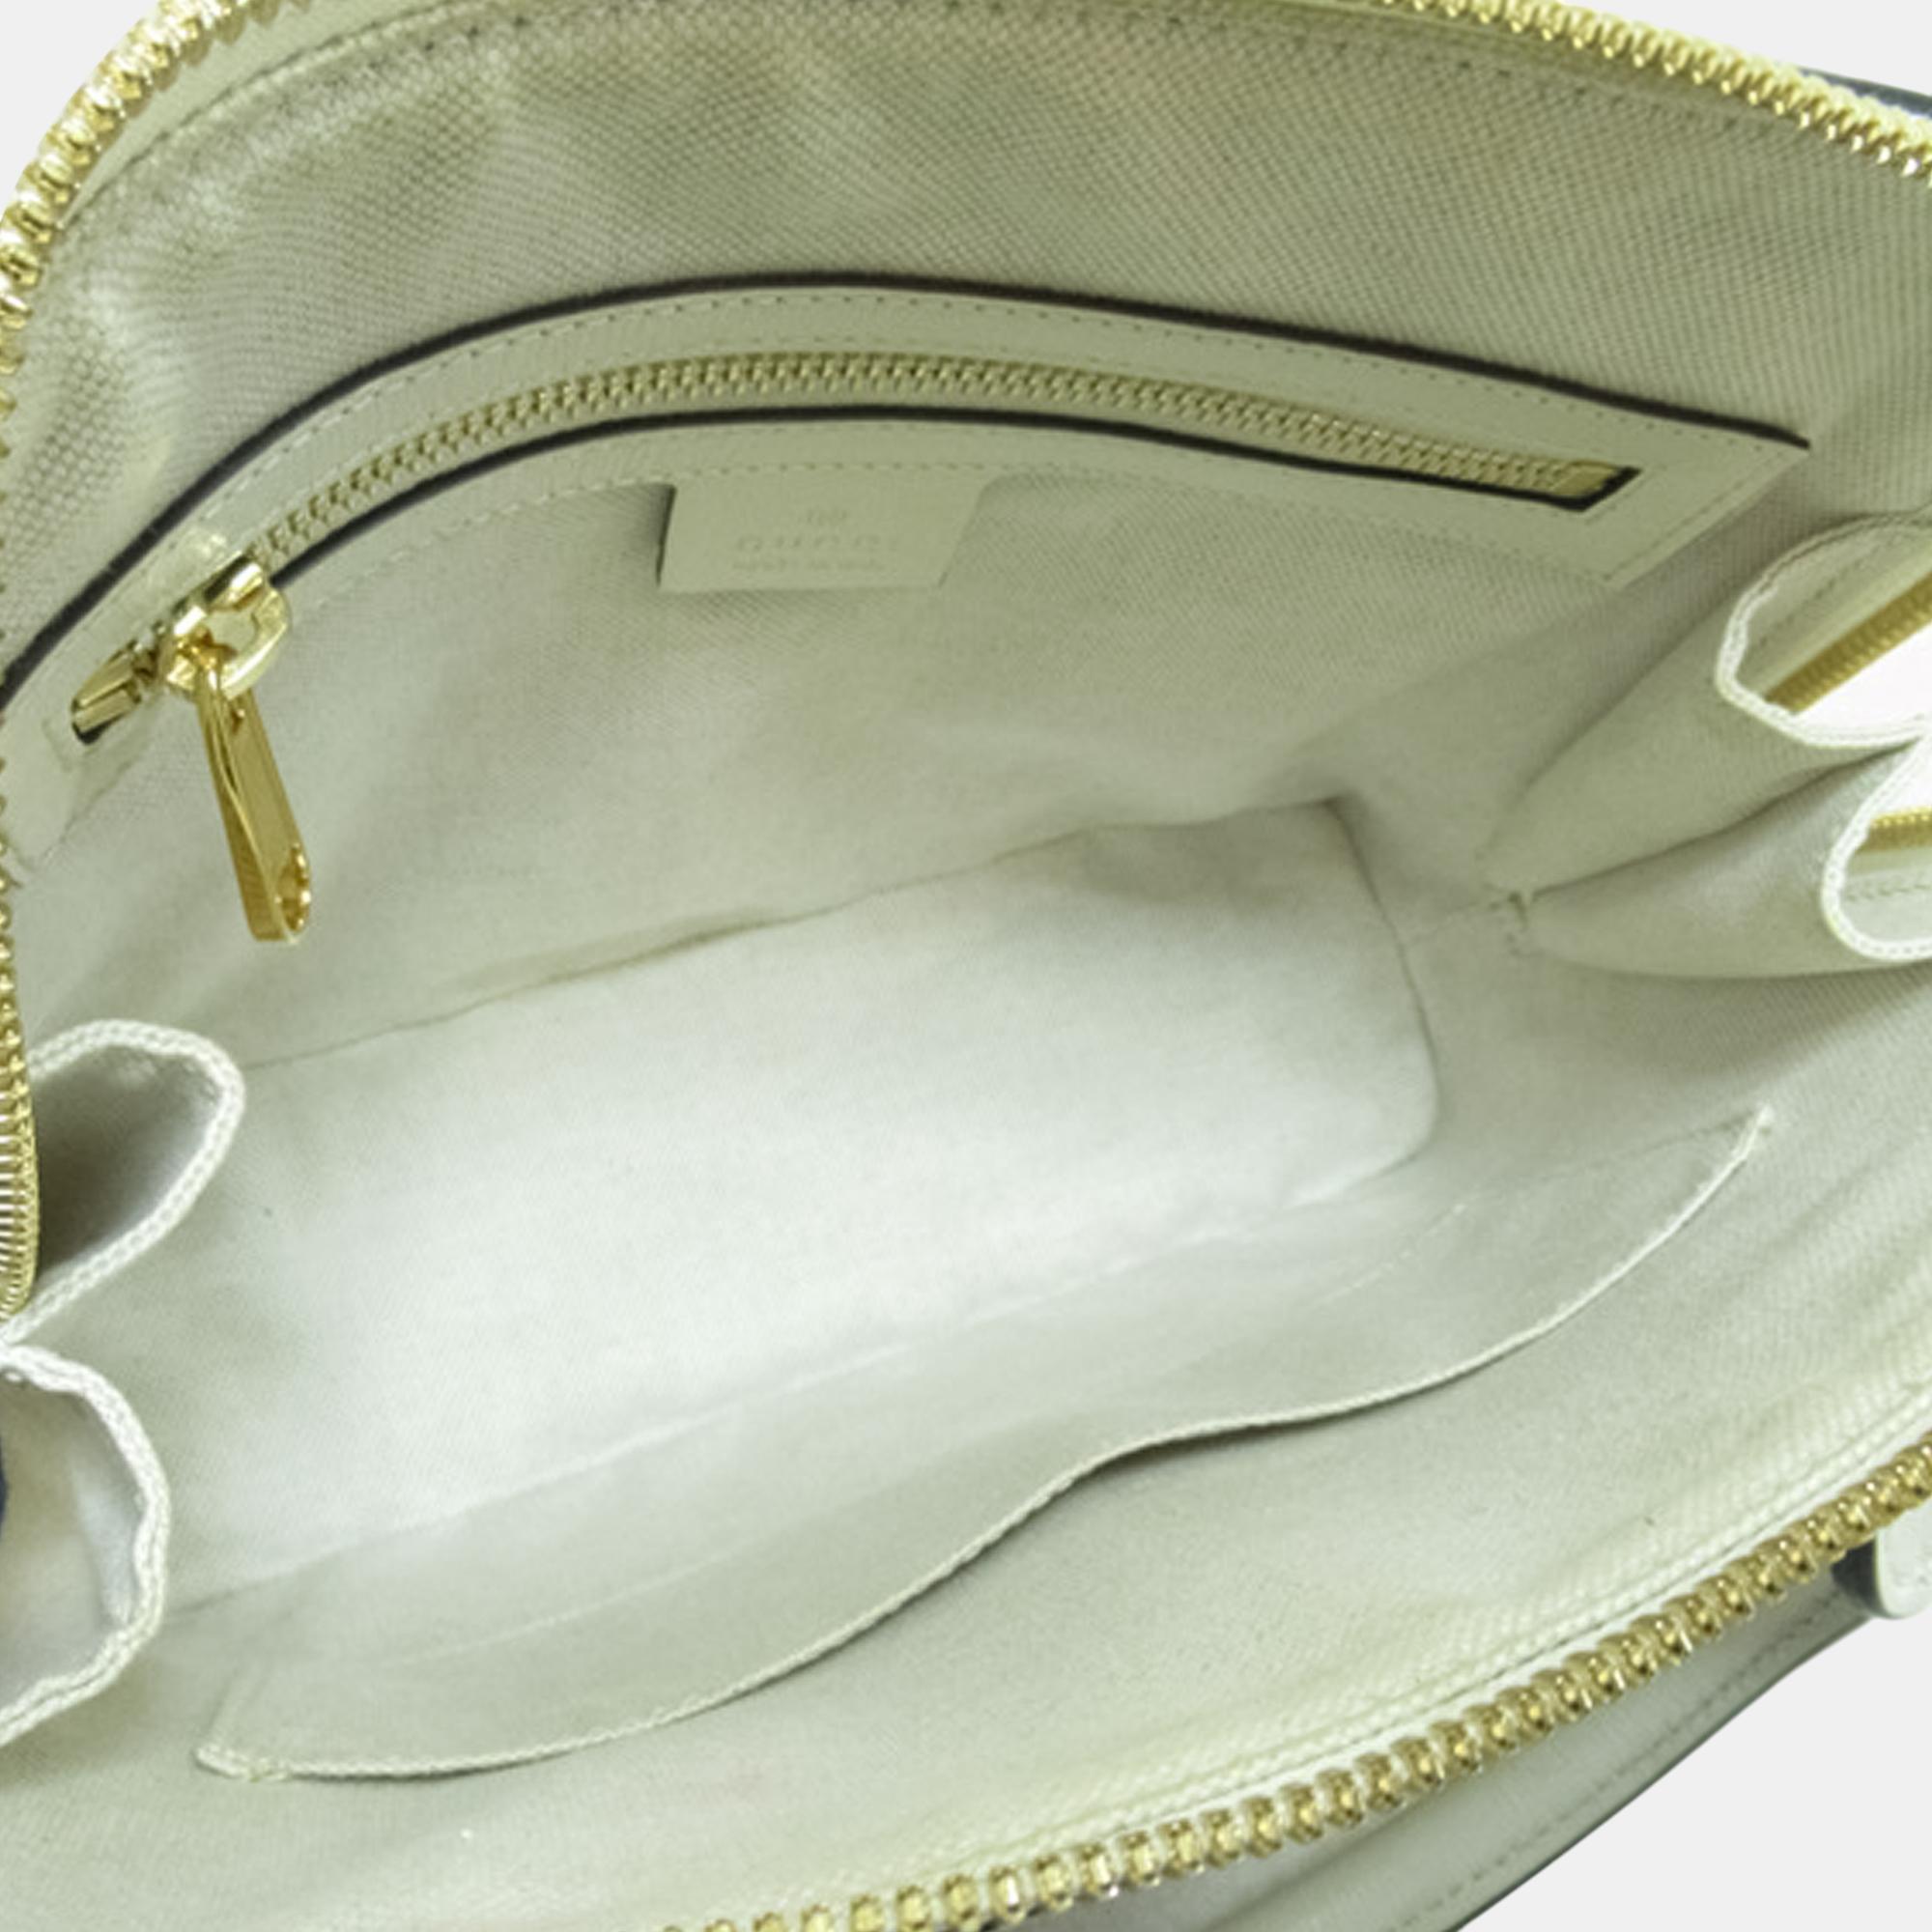 Gucci Beige/Brown/,White Small GG Supreme Horsebit 1955 Top Handle